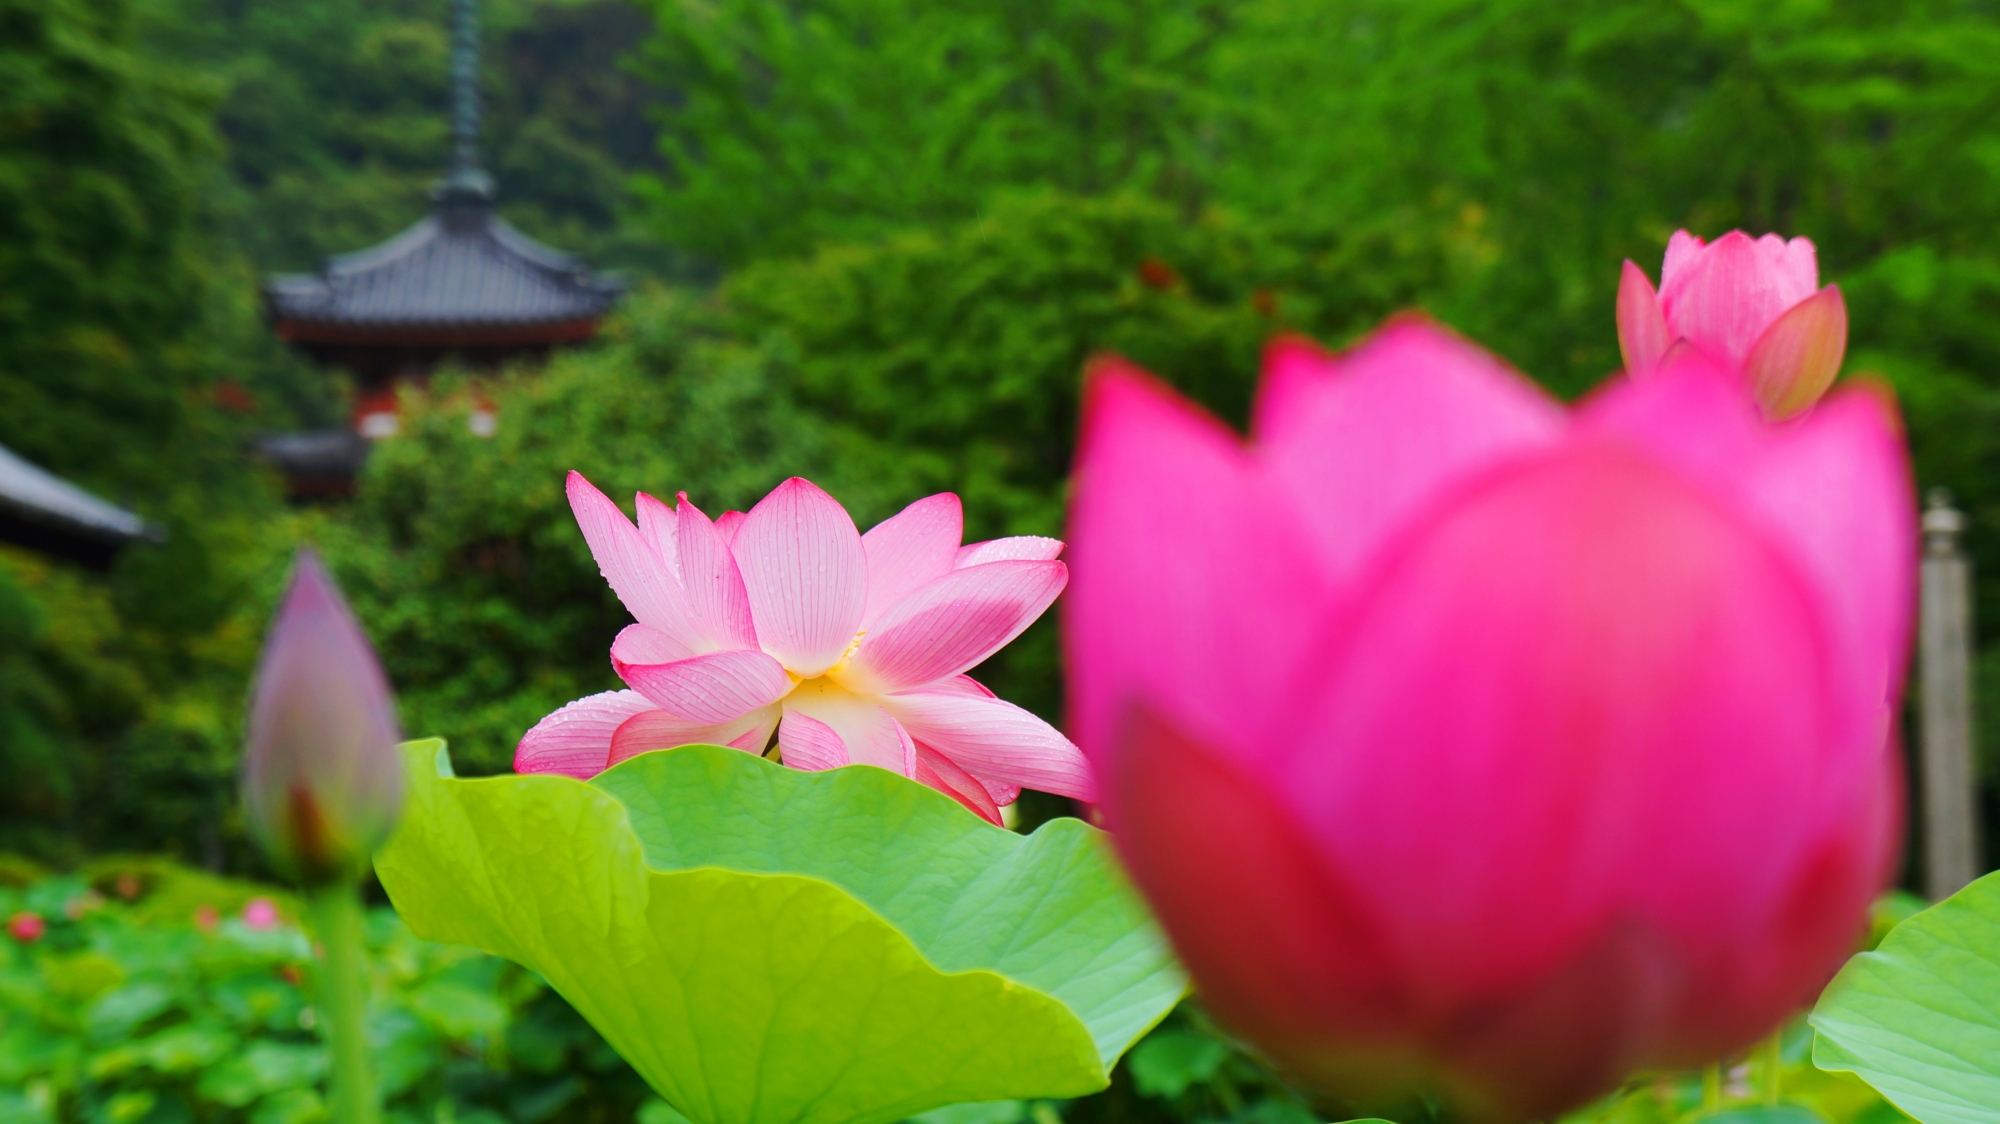 三室戸寺の三重塔と深い緑に映える色とりどりの蓮の花